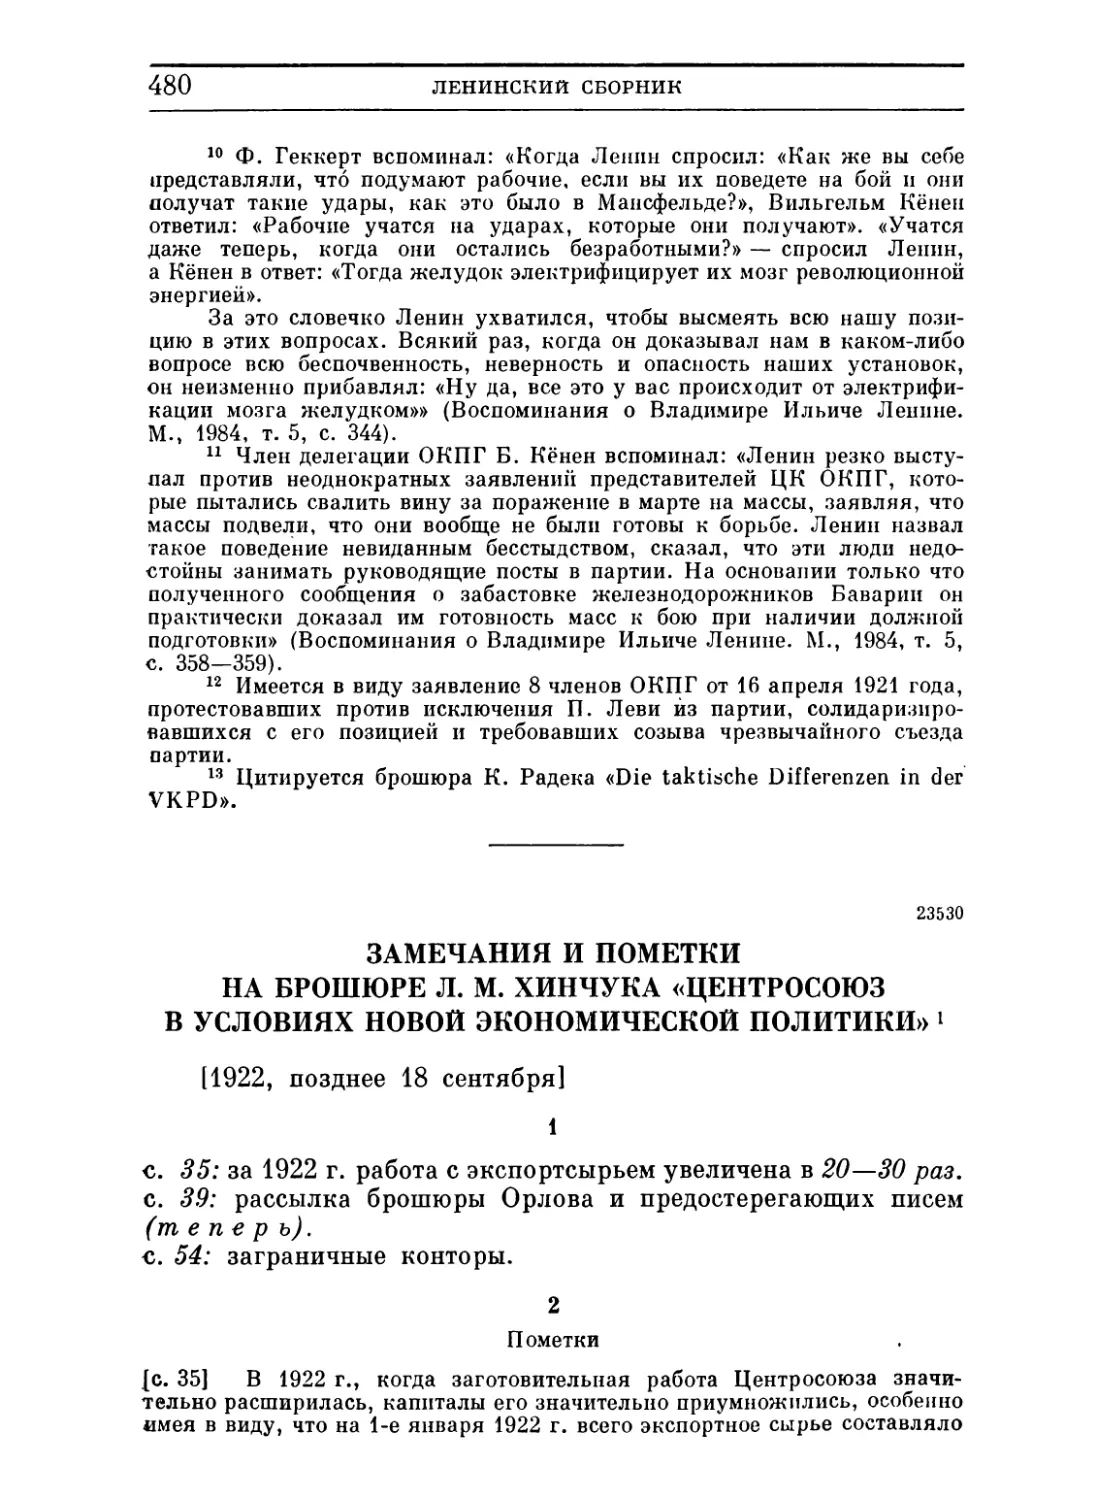 Замечания и пометки на брошюре Л. М. Хинчука «Центросоюз в условиях новой экономической политики». Позднее 18 сентября 1922 ..... .